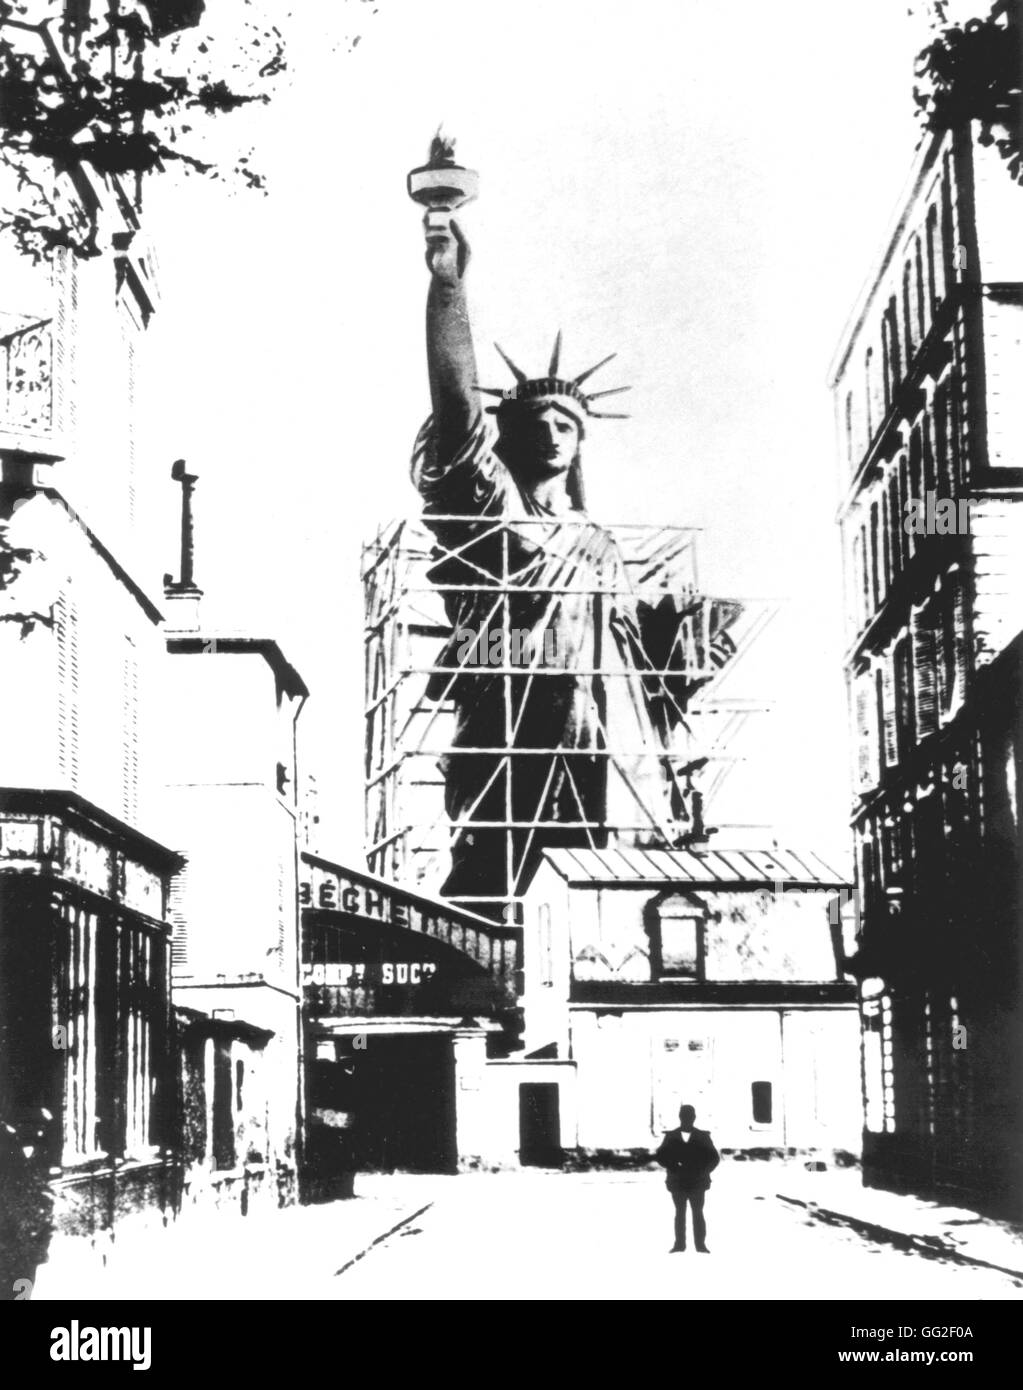 Modelo a escala de la Estatua de la libertad creada por Bartholdi, fotografiado en París, visto desde el bulevar de Courcelles. Una vez terminada, la estatua fue desmantelada y enviada a los Estados Unidos. Francia Washington. La Biblioteca del Congreso Foto de stock